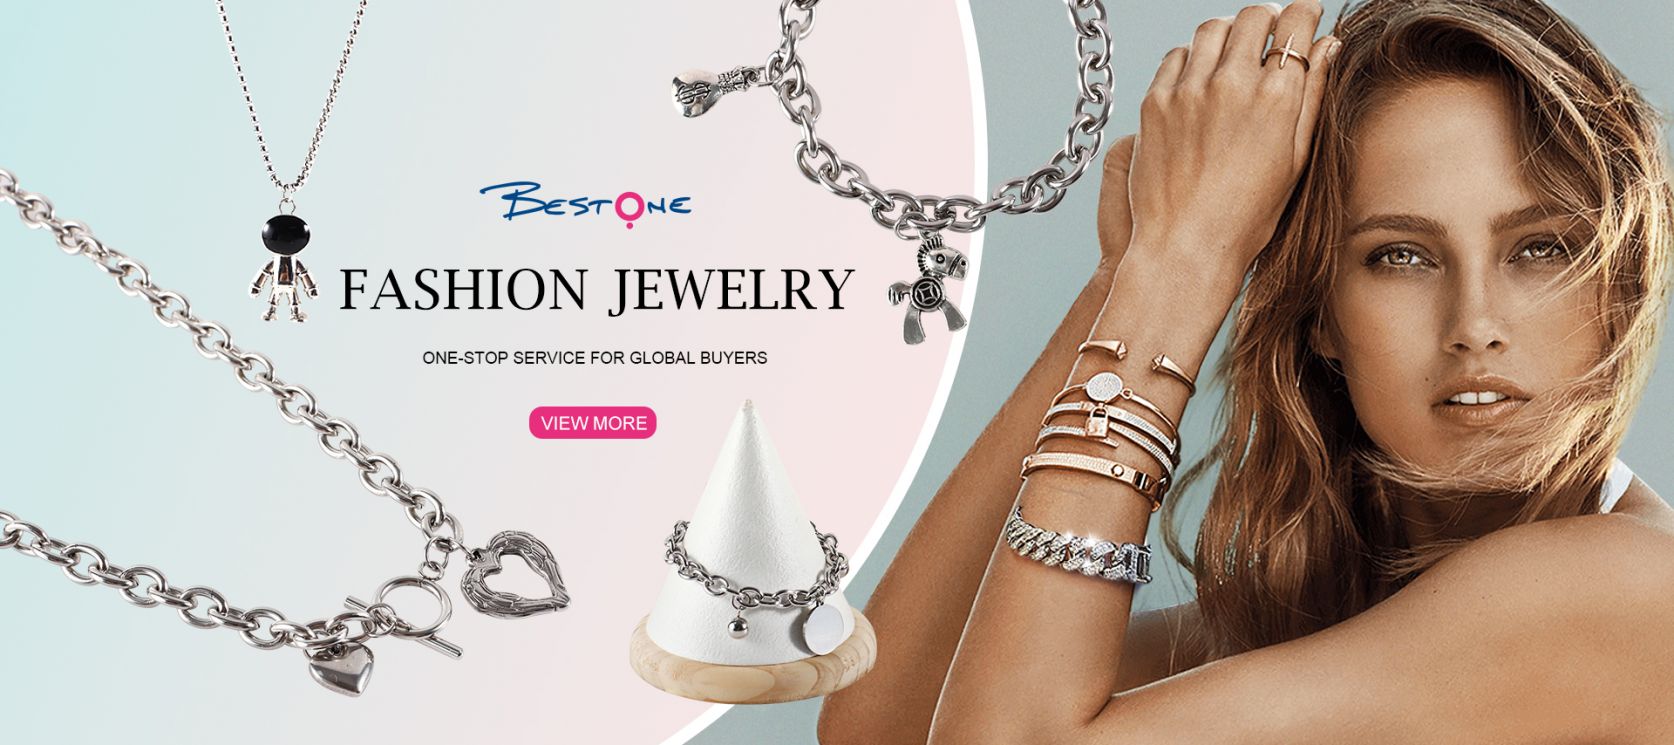 Hebei Bestone Jewelry Co., Ltd.